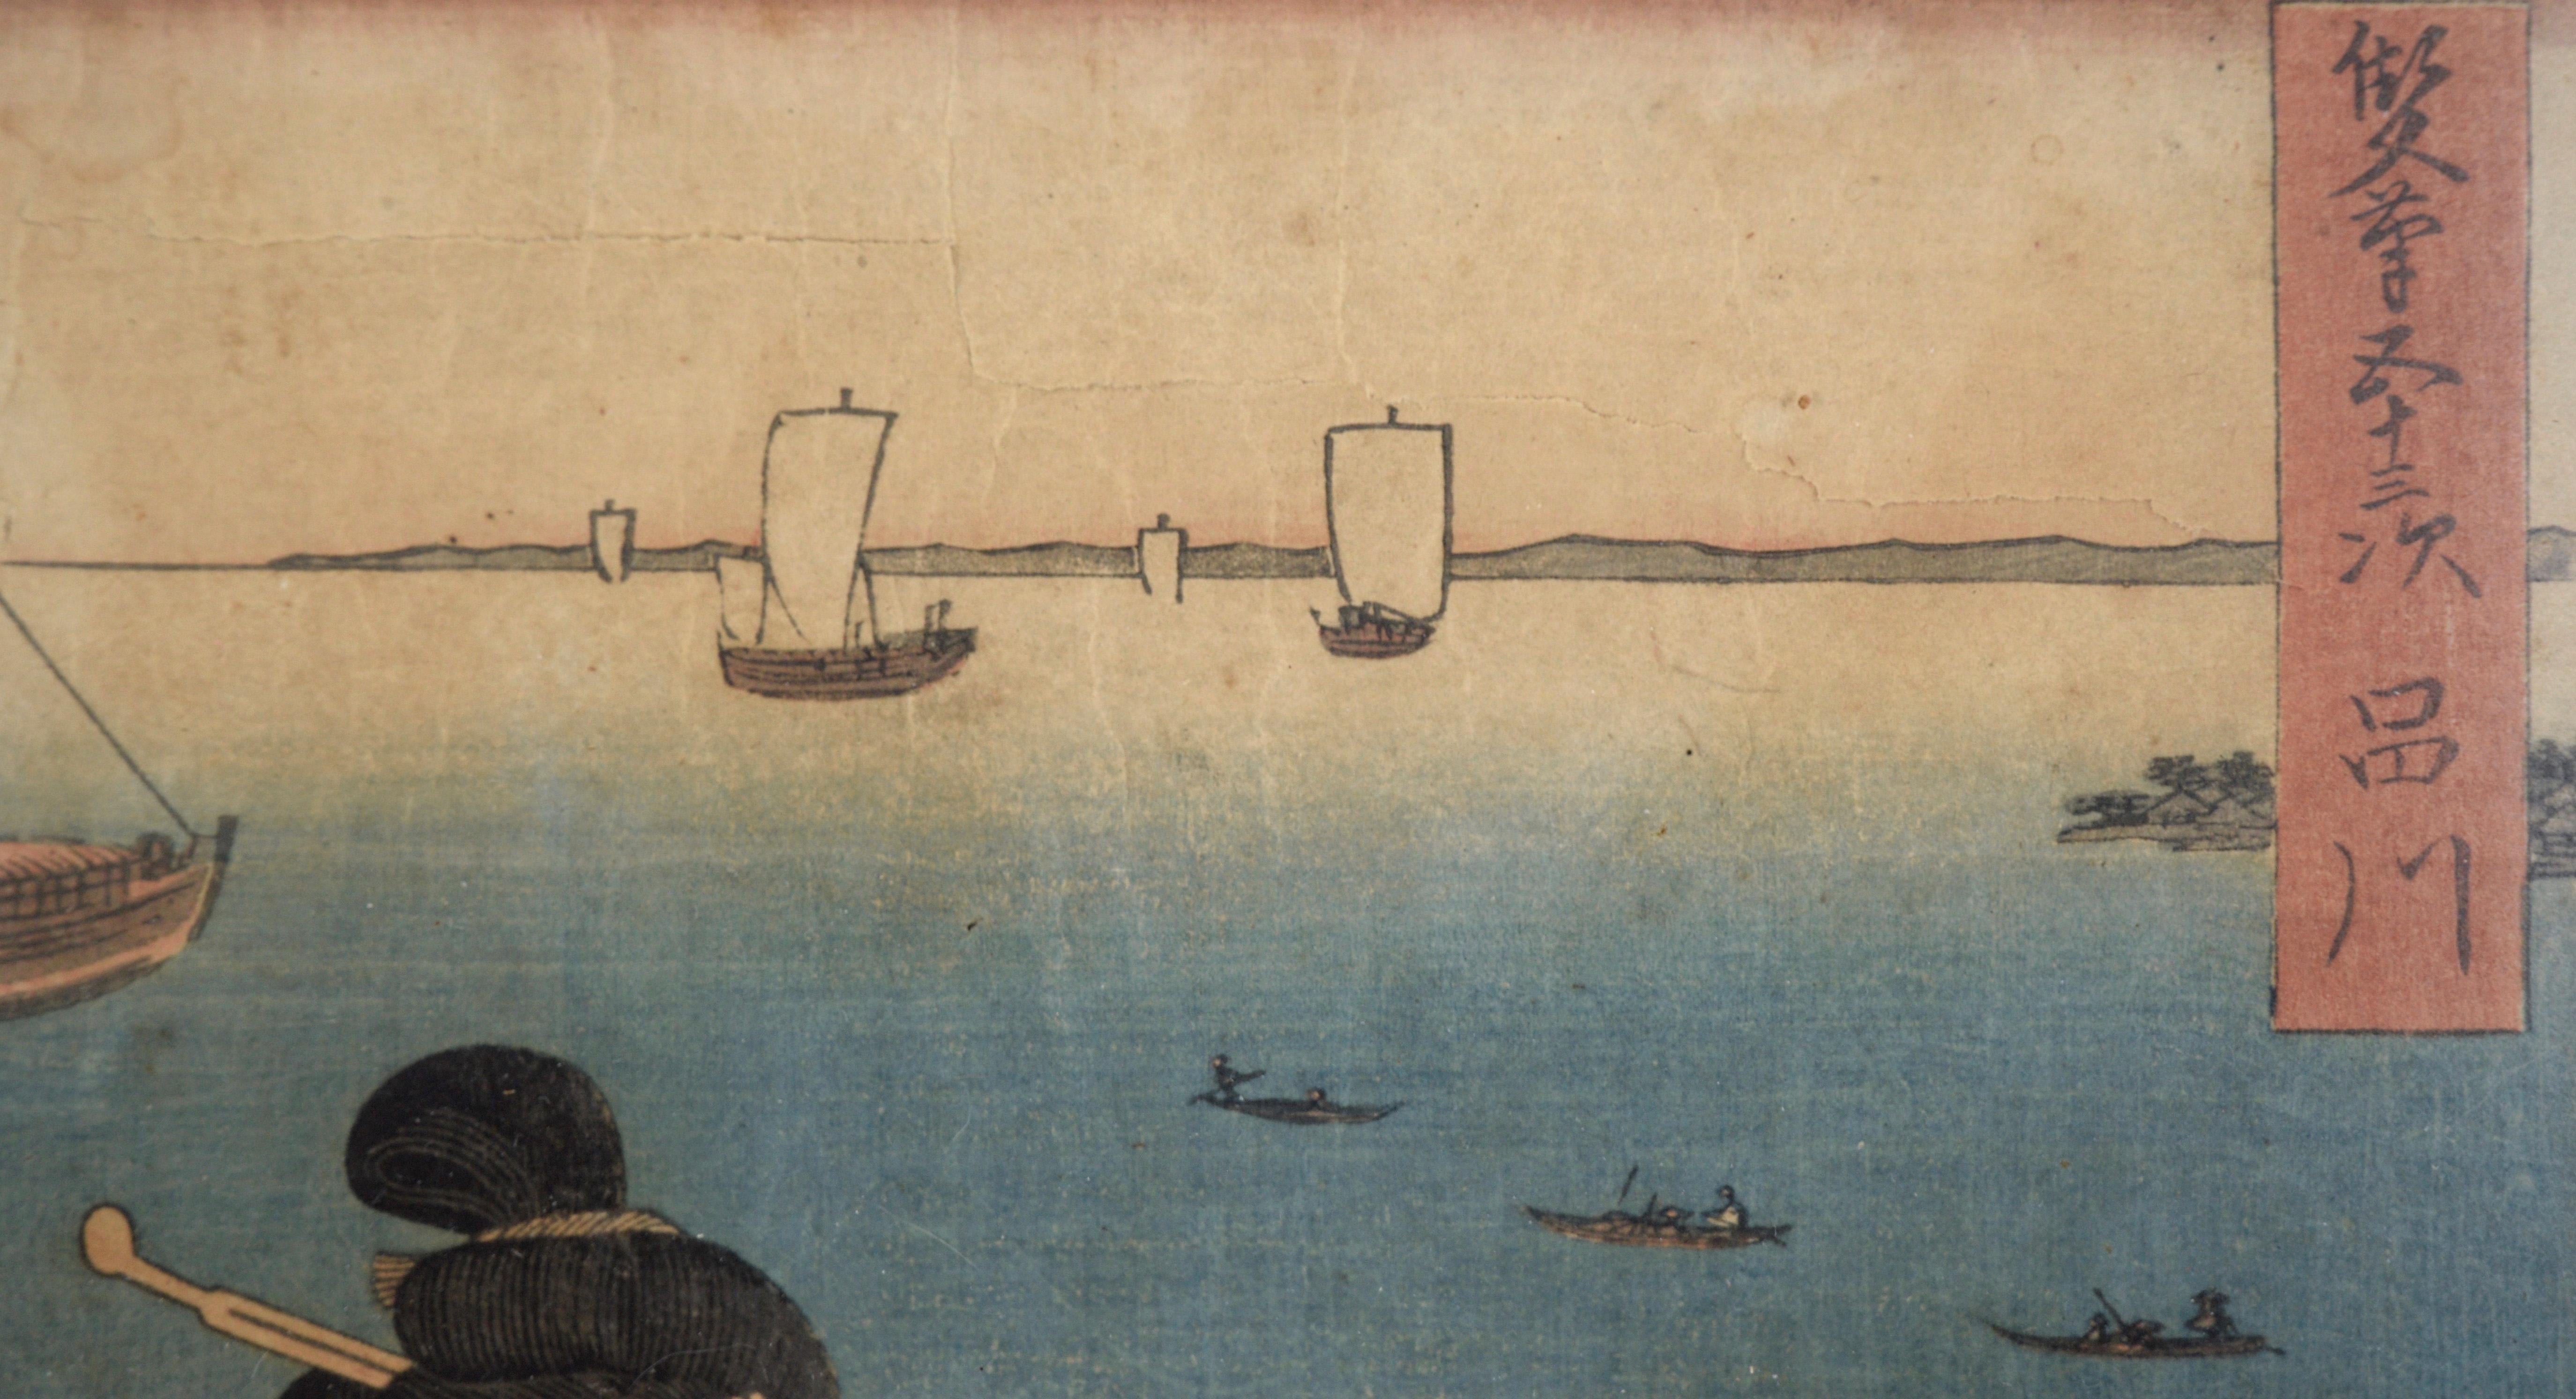 Coiffeuse 53 Stations of Tokaido - Woodblock Utagawa Hiroshige et Kunisada

Élégante gravure sur bois d'Utagawa Hiroshige I (japonais, 1797-1858) et d'Utagawa Kunisada I (Toyokuni III) (japonais, 1786-1864). Dans cette série, les paysages sont de